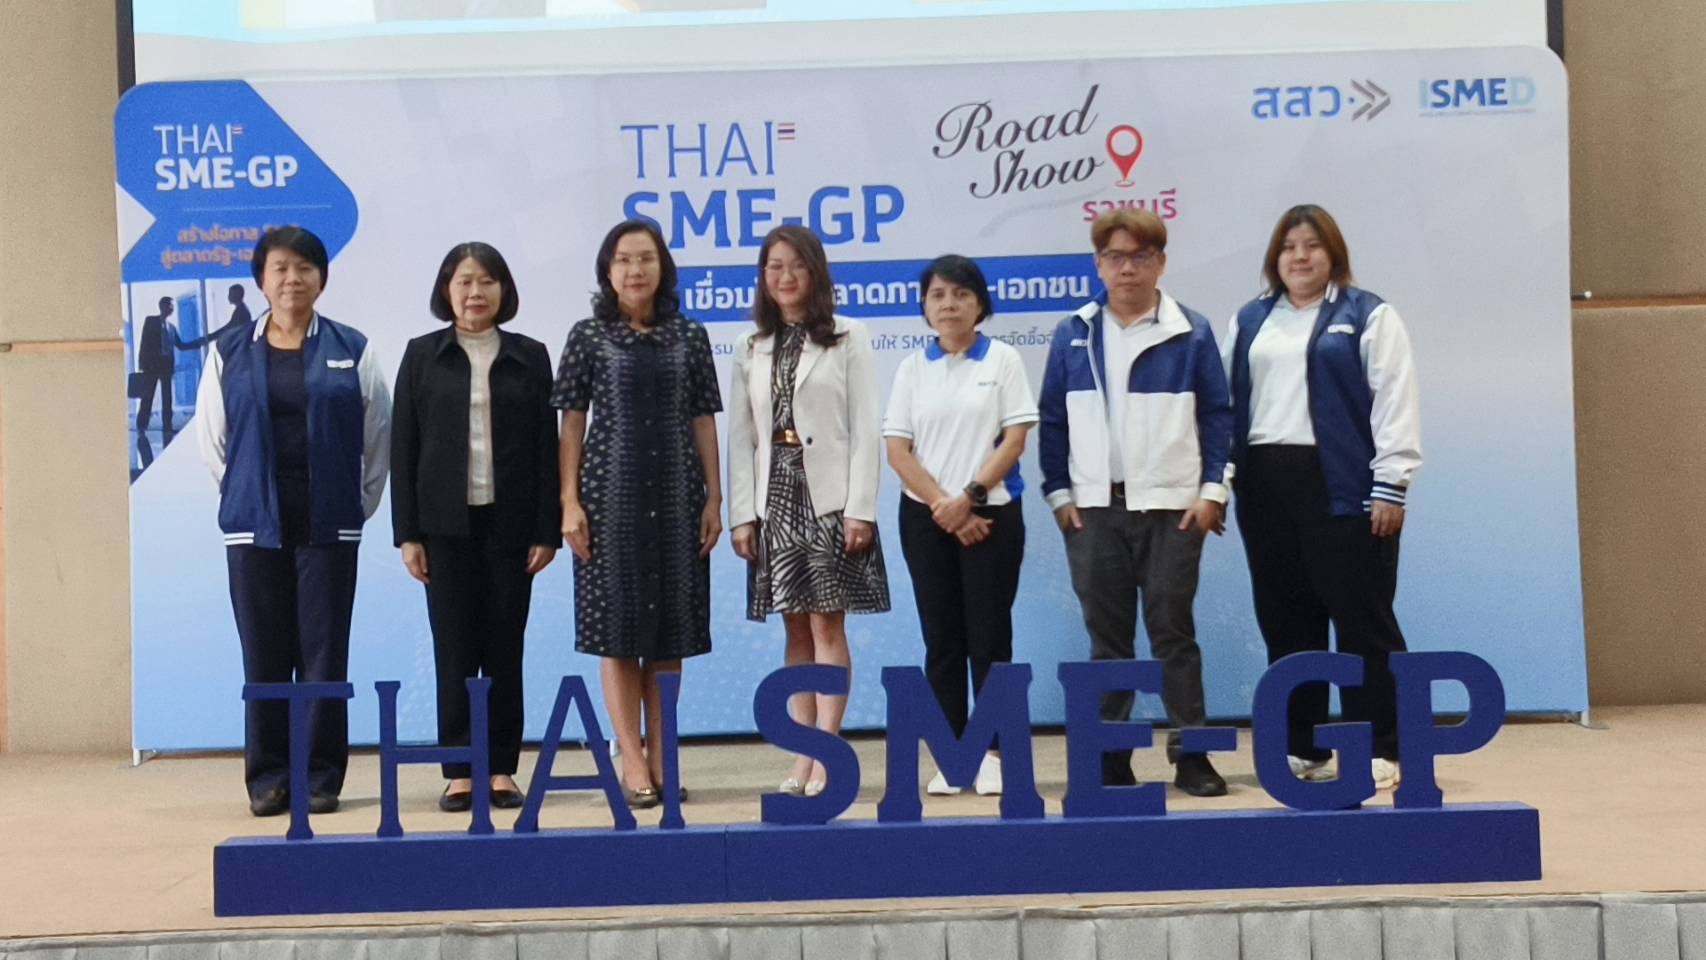 ราชบุรี-สสว.จัดงาน”THAI SME-GP Roadshow@ราชบุรี” ดัน SMEเข้าสู่ตลาดภาครัฐ